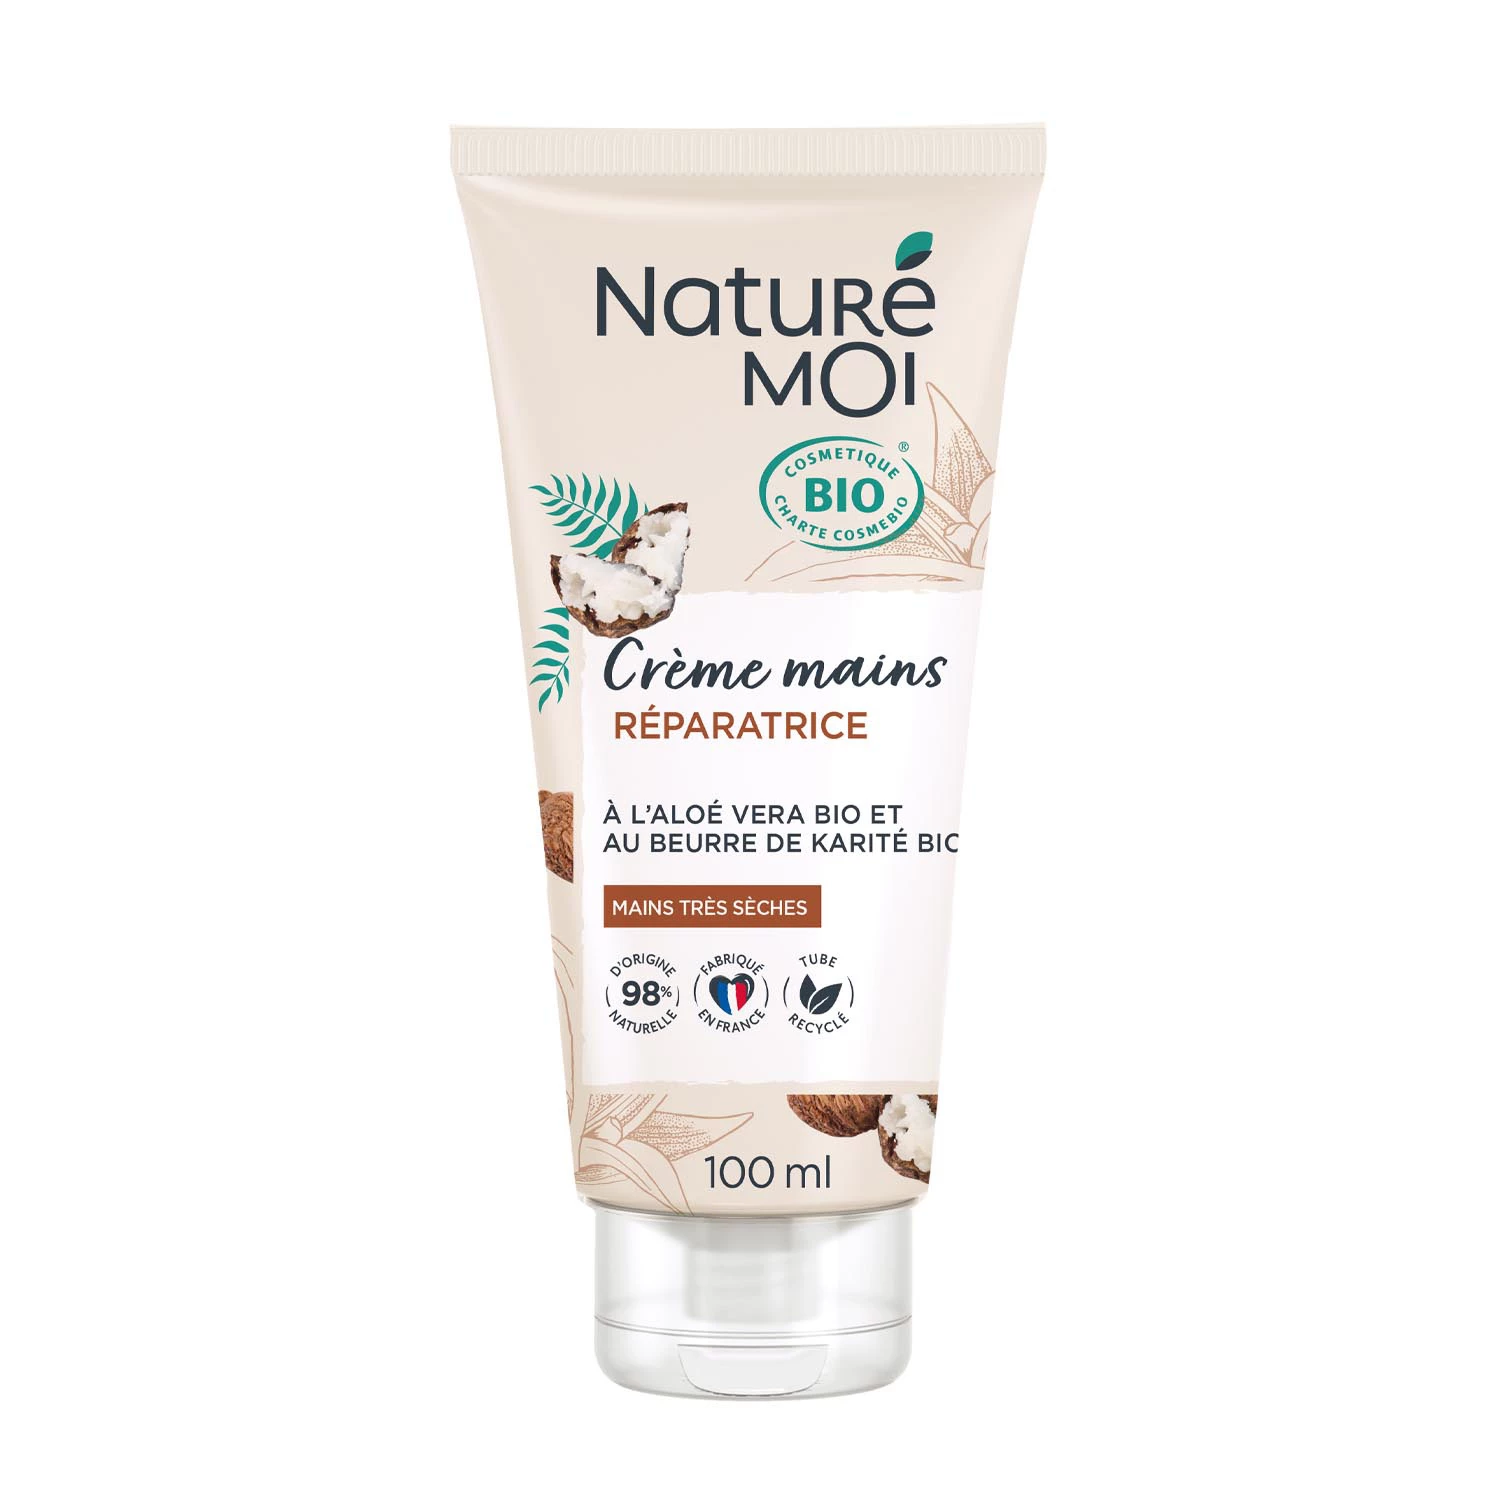 Organic restorative hand cream, 100ml tube, NATUREMOI